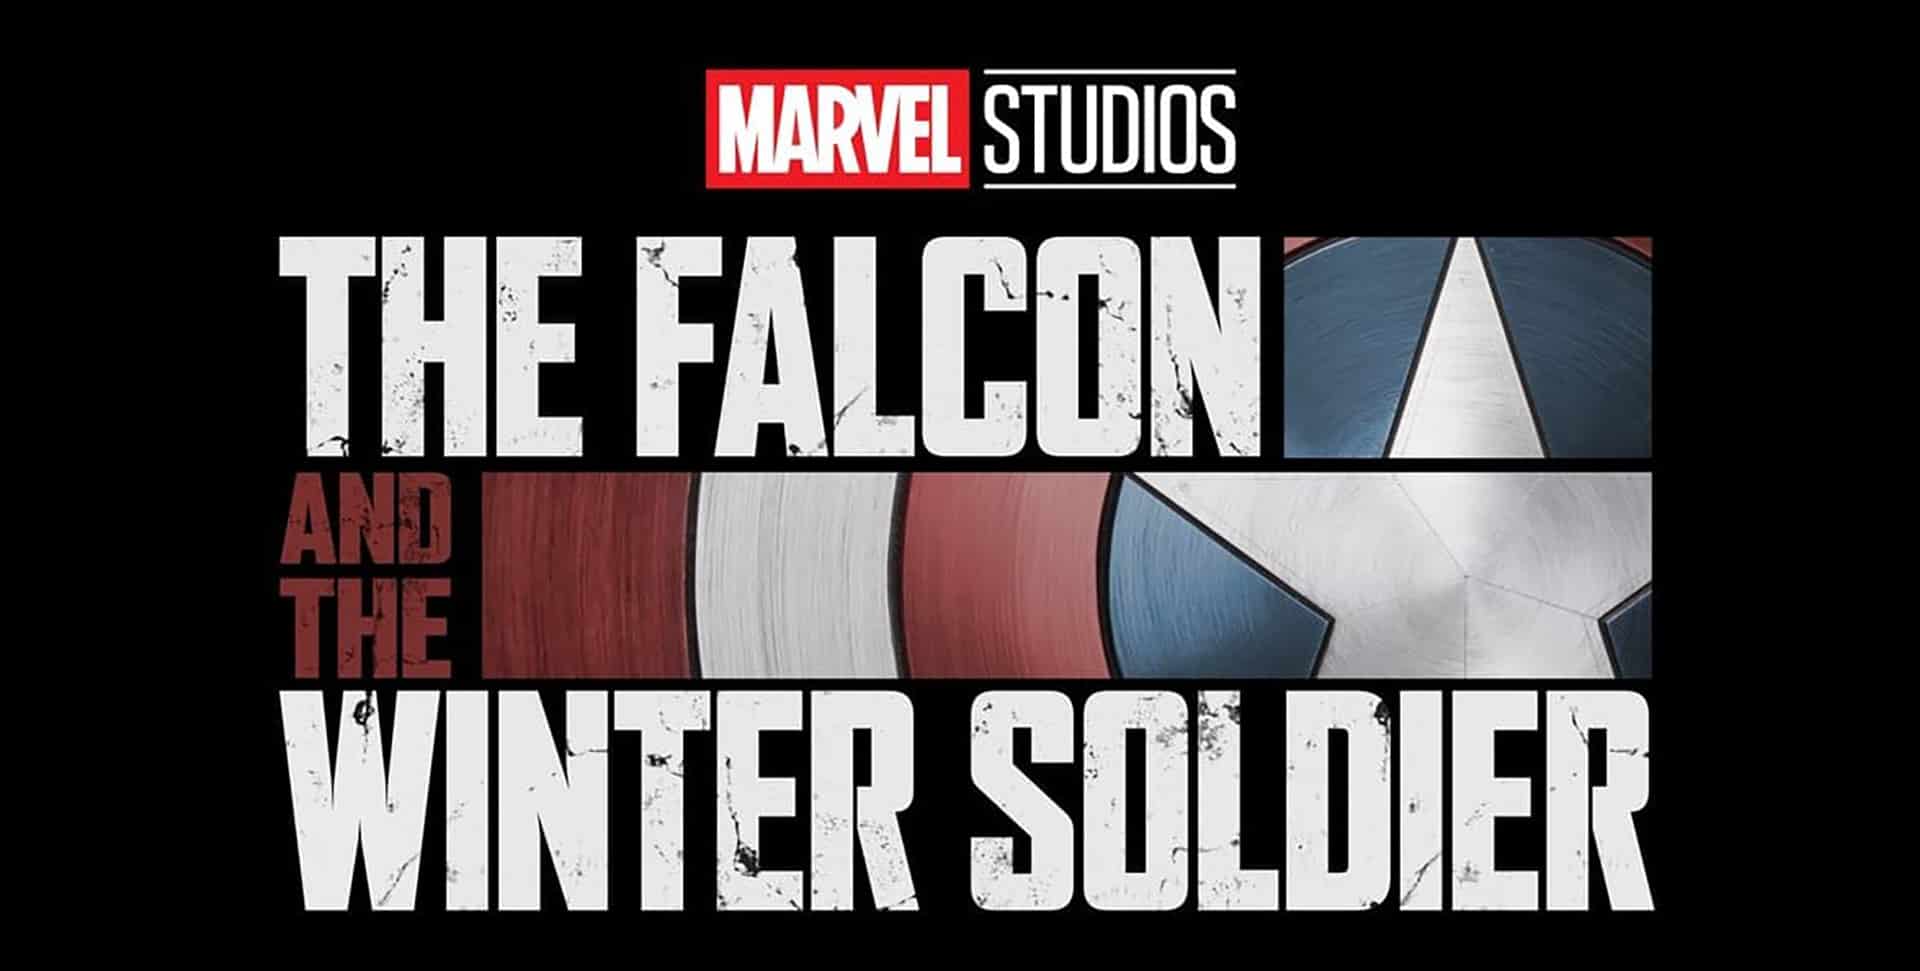 WandaVision Falcon Winter Soldier